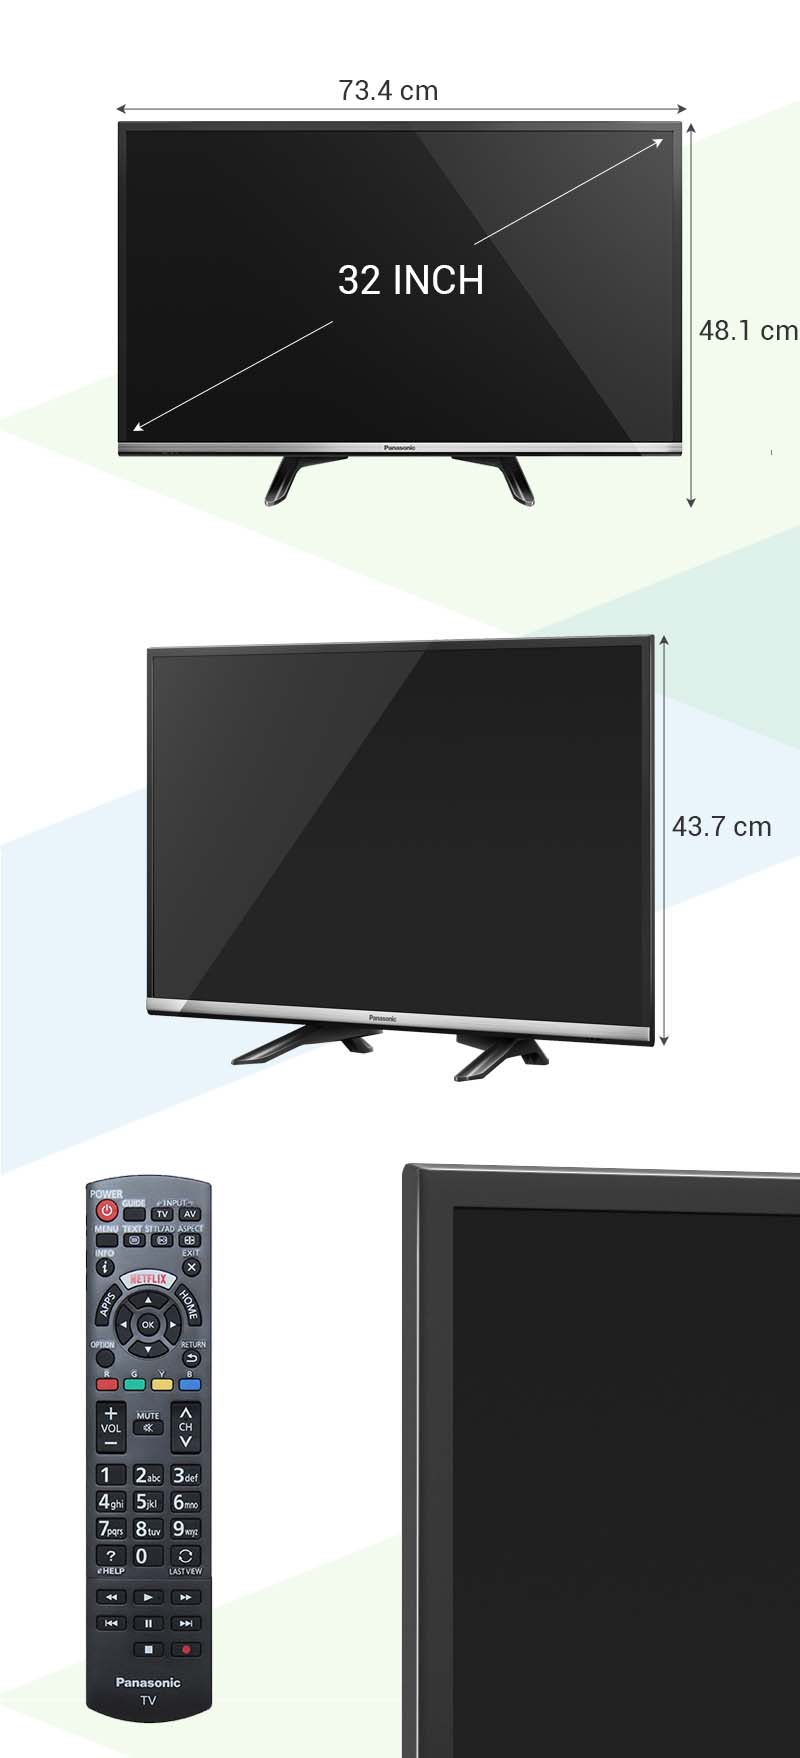 Smart Tivi Panasonic 32 inch TH-32DS500V - Kích thước TV